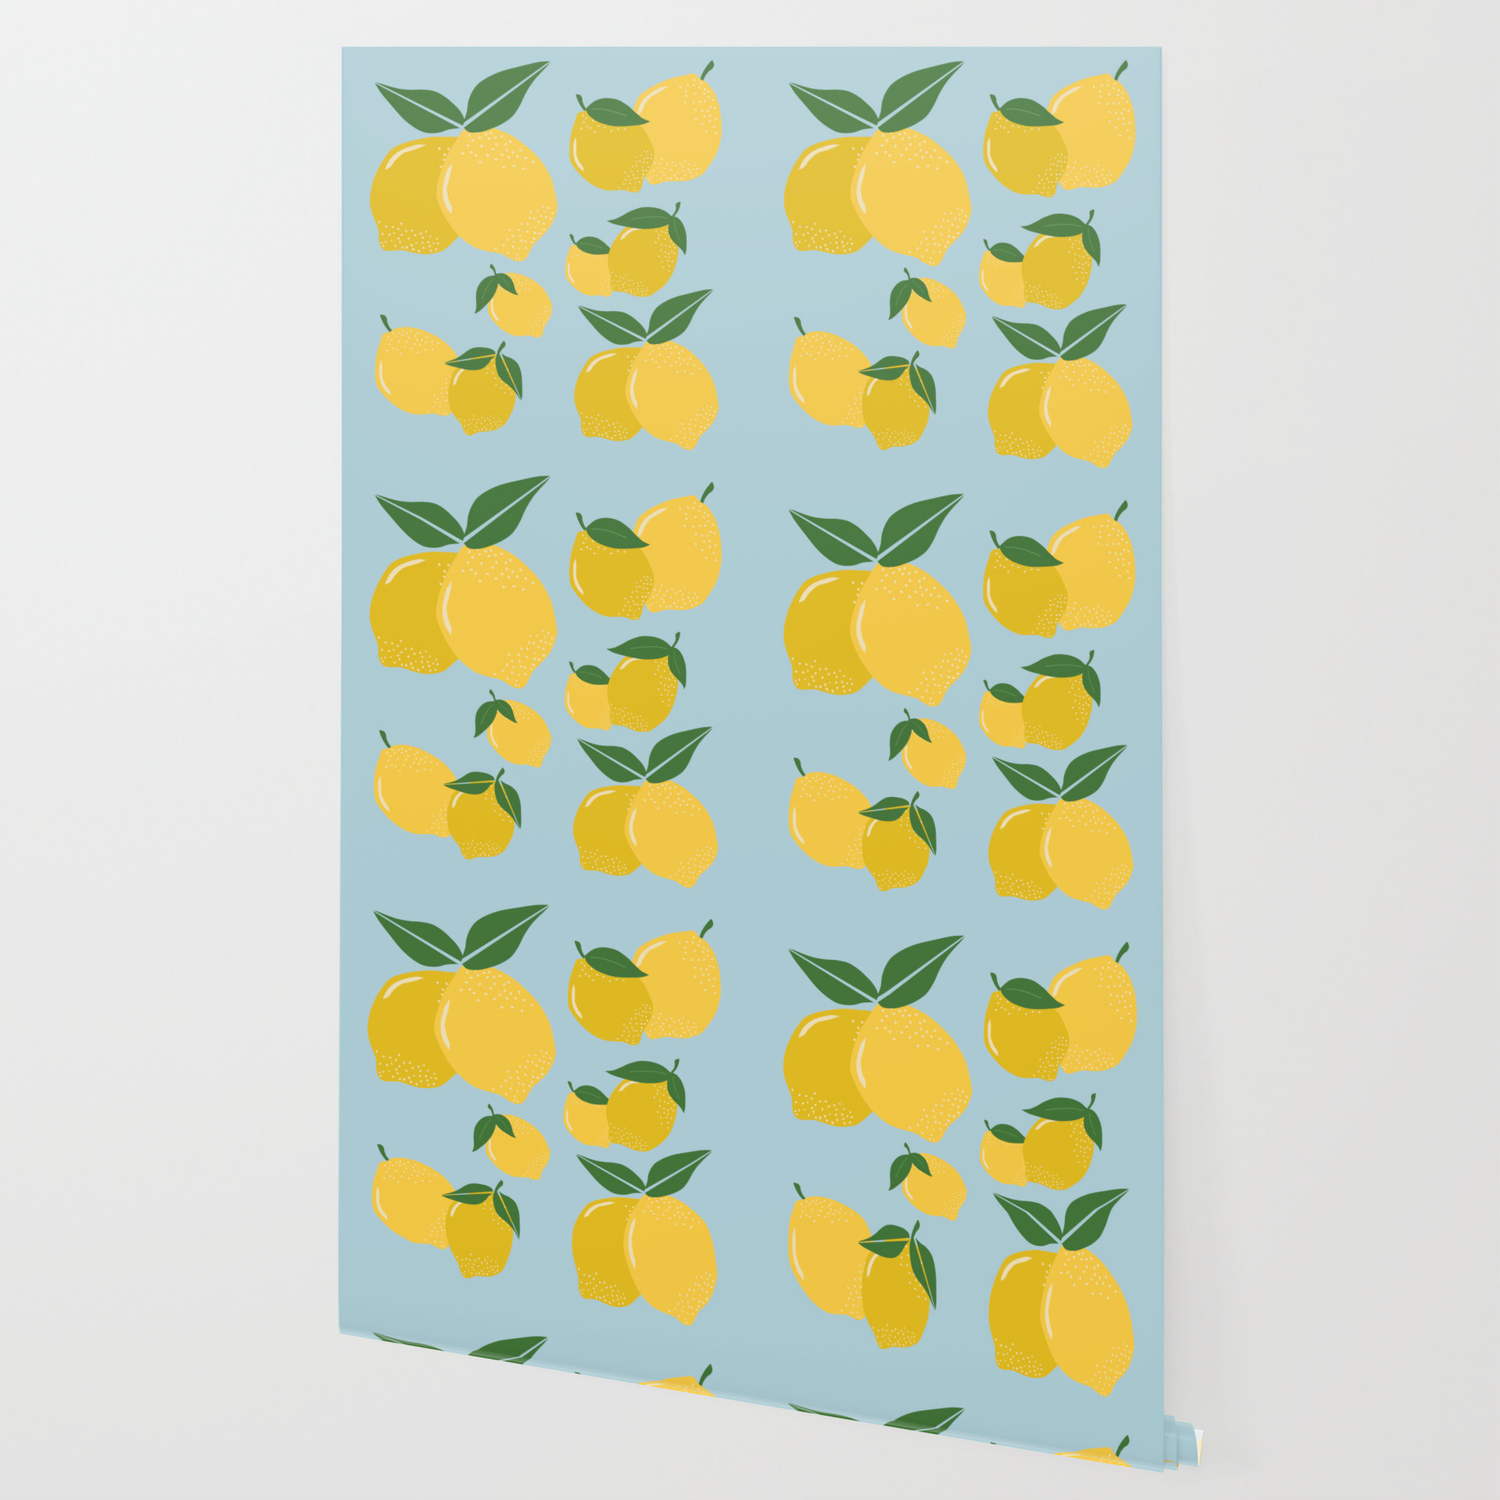 Aesthetic Lemons Wallpapers